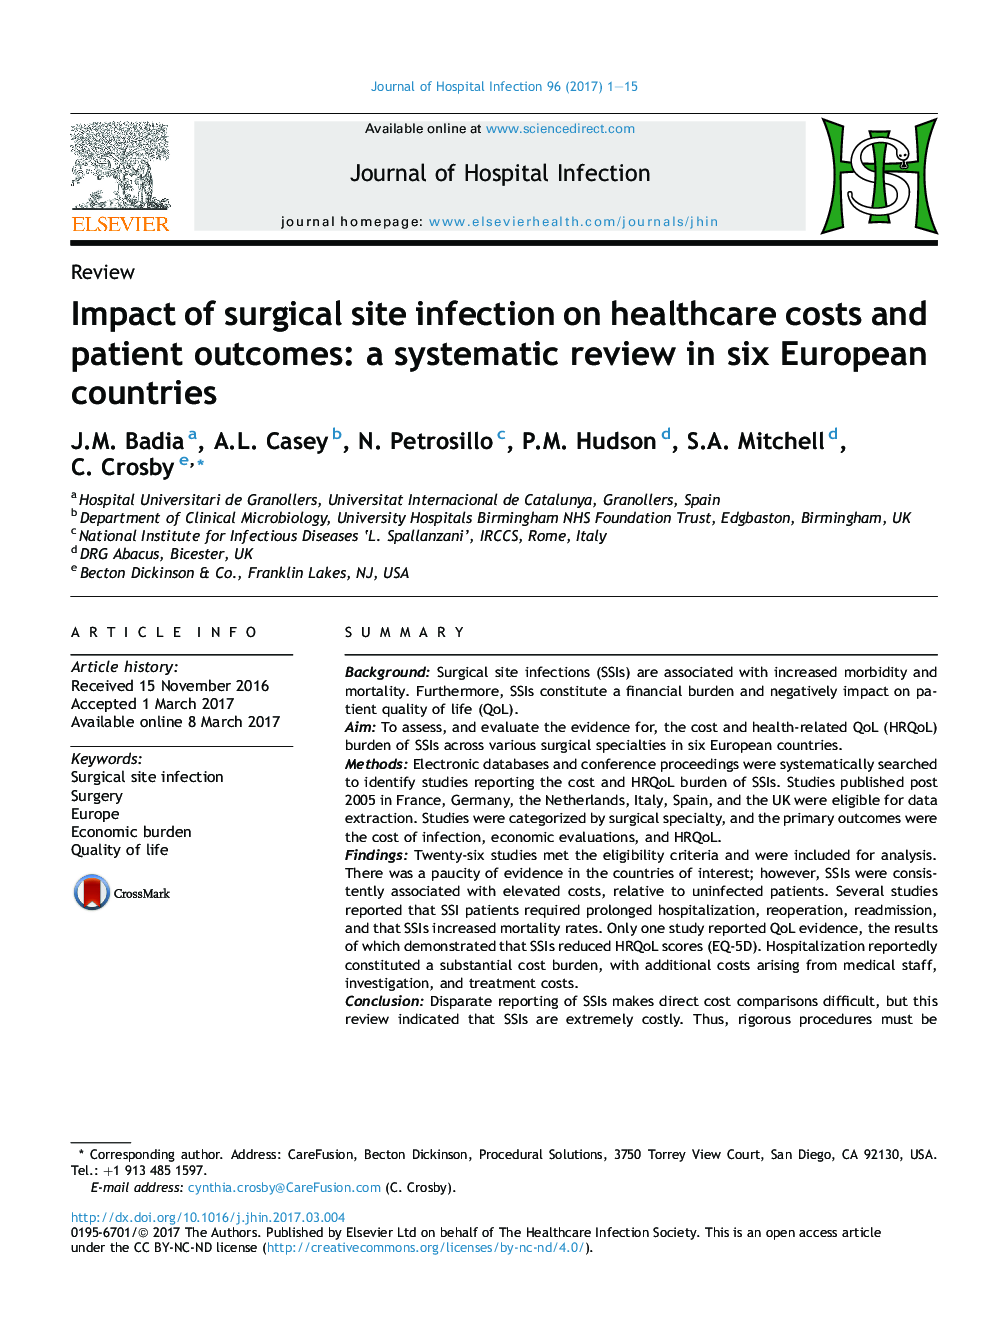 تأثیر عفونت محل جراحی در هزینه های مراقبت های بهداشتی و نتایج بیماران: بررسی سیستماتیک در شش کشور اروپایی 